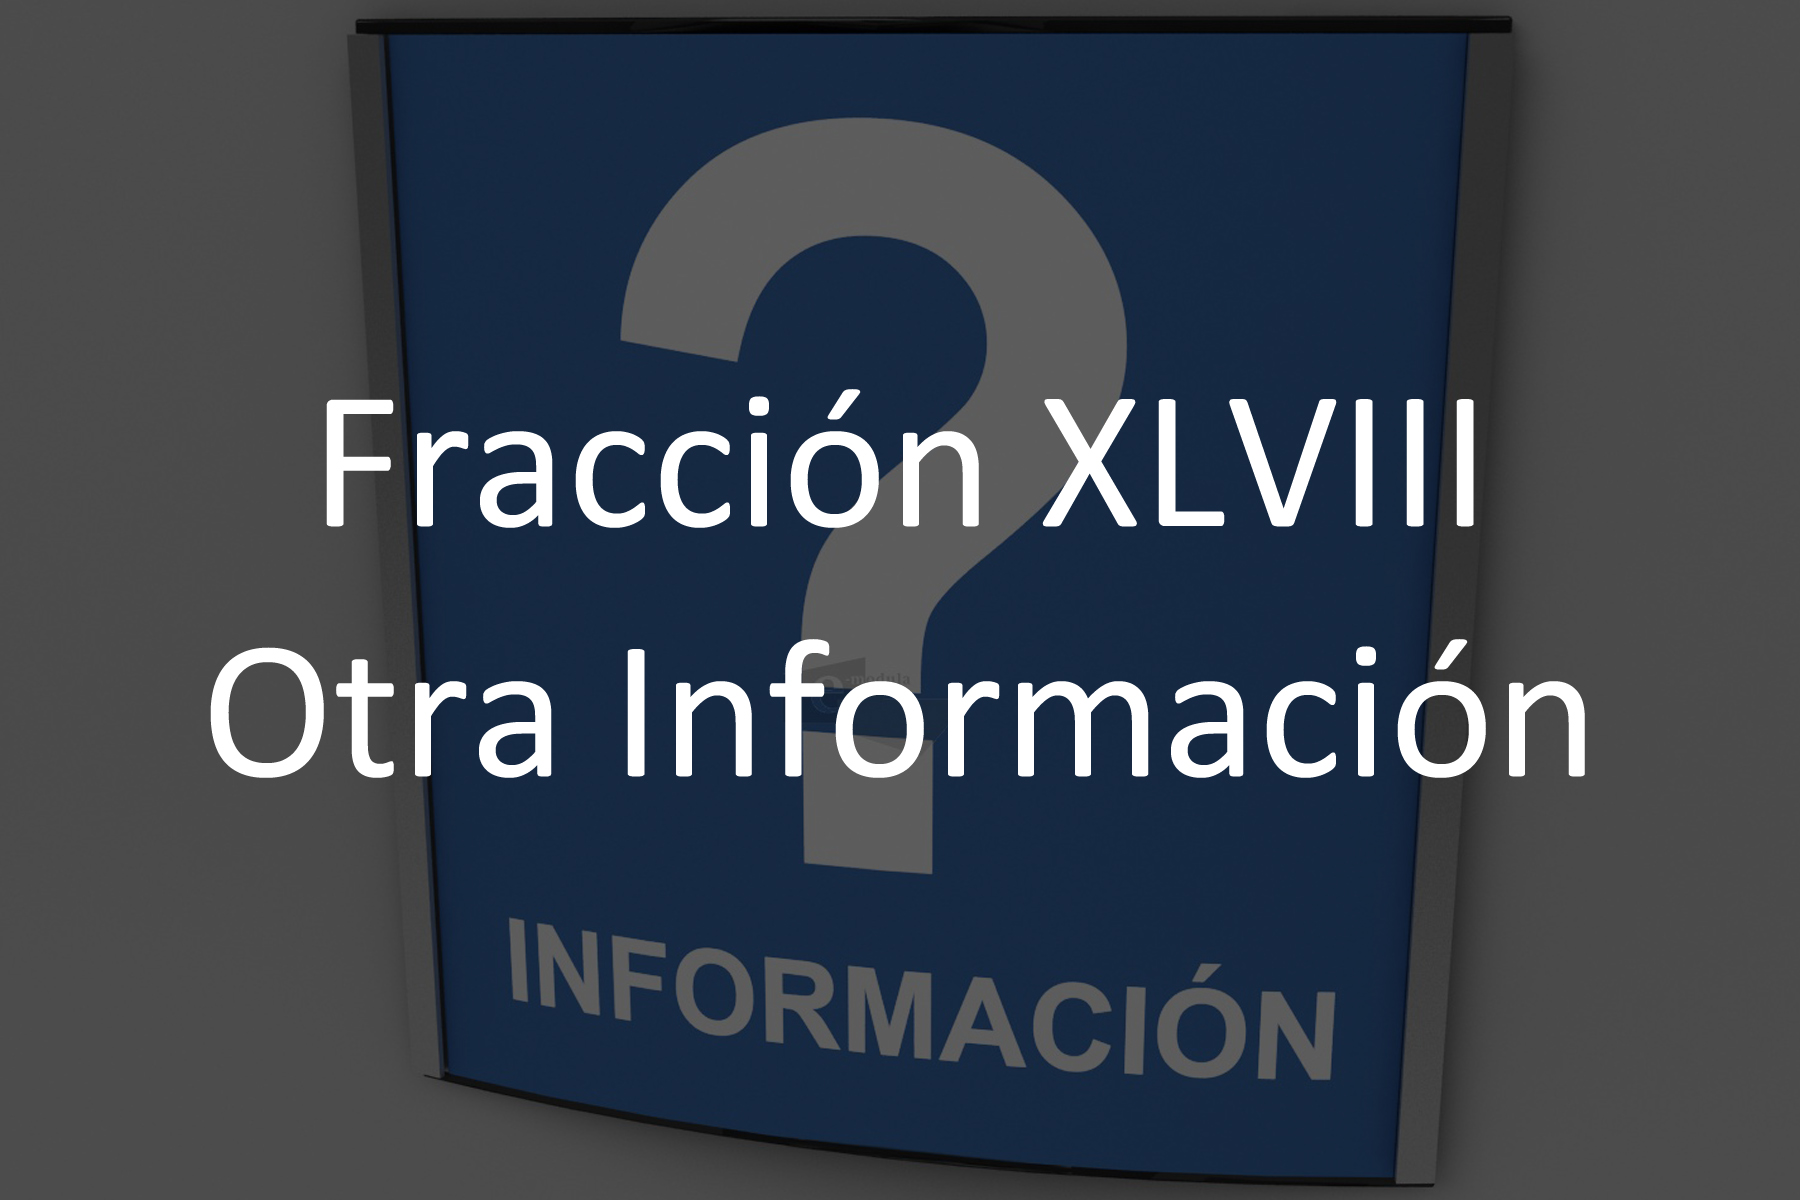 Fracción XLVIII Otra Información de Interés